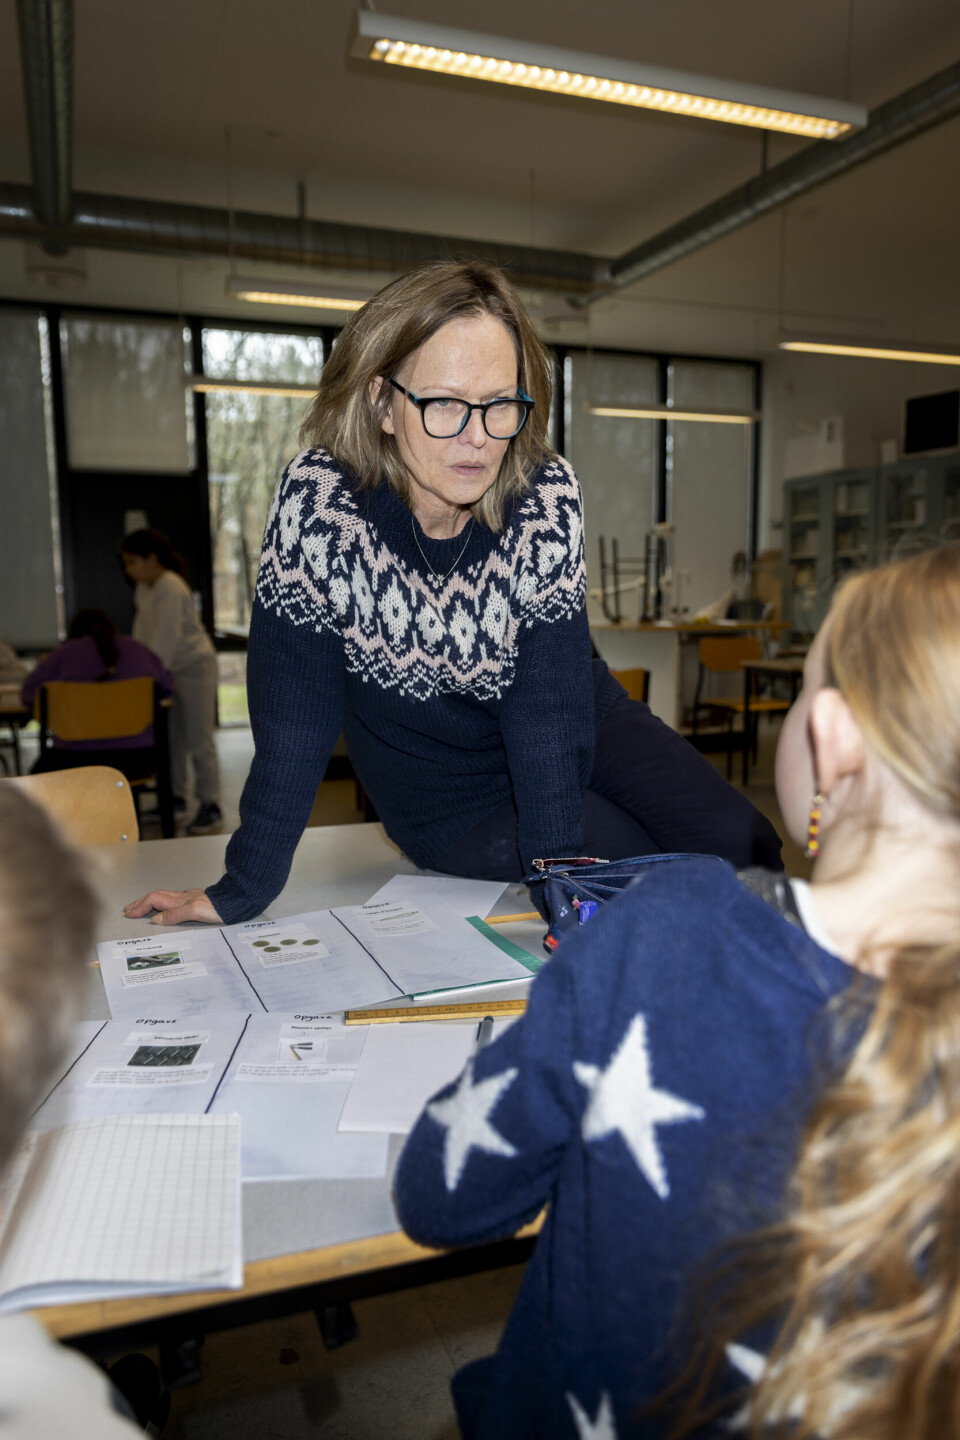 Nogle gange skal opgaverne læses flere gange, før eleverne kan genfortælle dem, men det hjælper eleverne med at forstå opgaven, fortæller lærer og matematikvejleder Helle Houkjær.